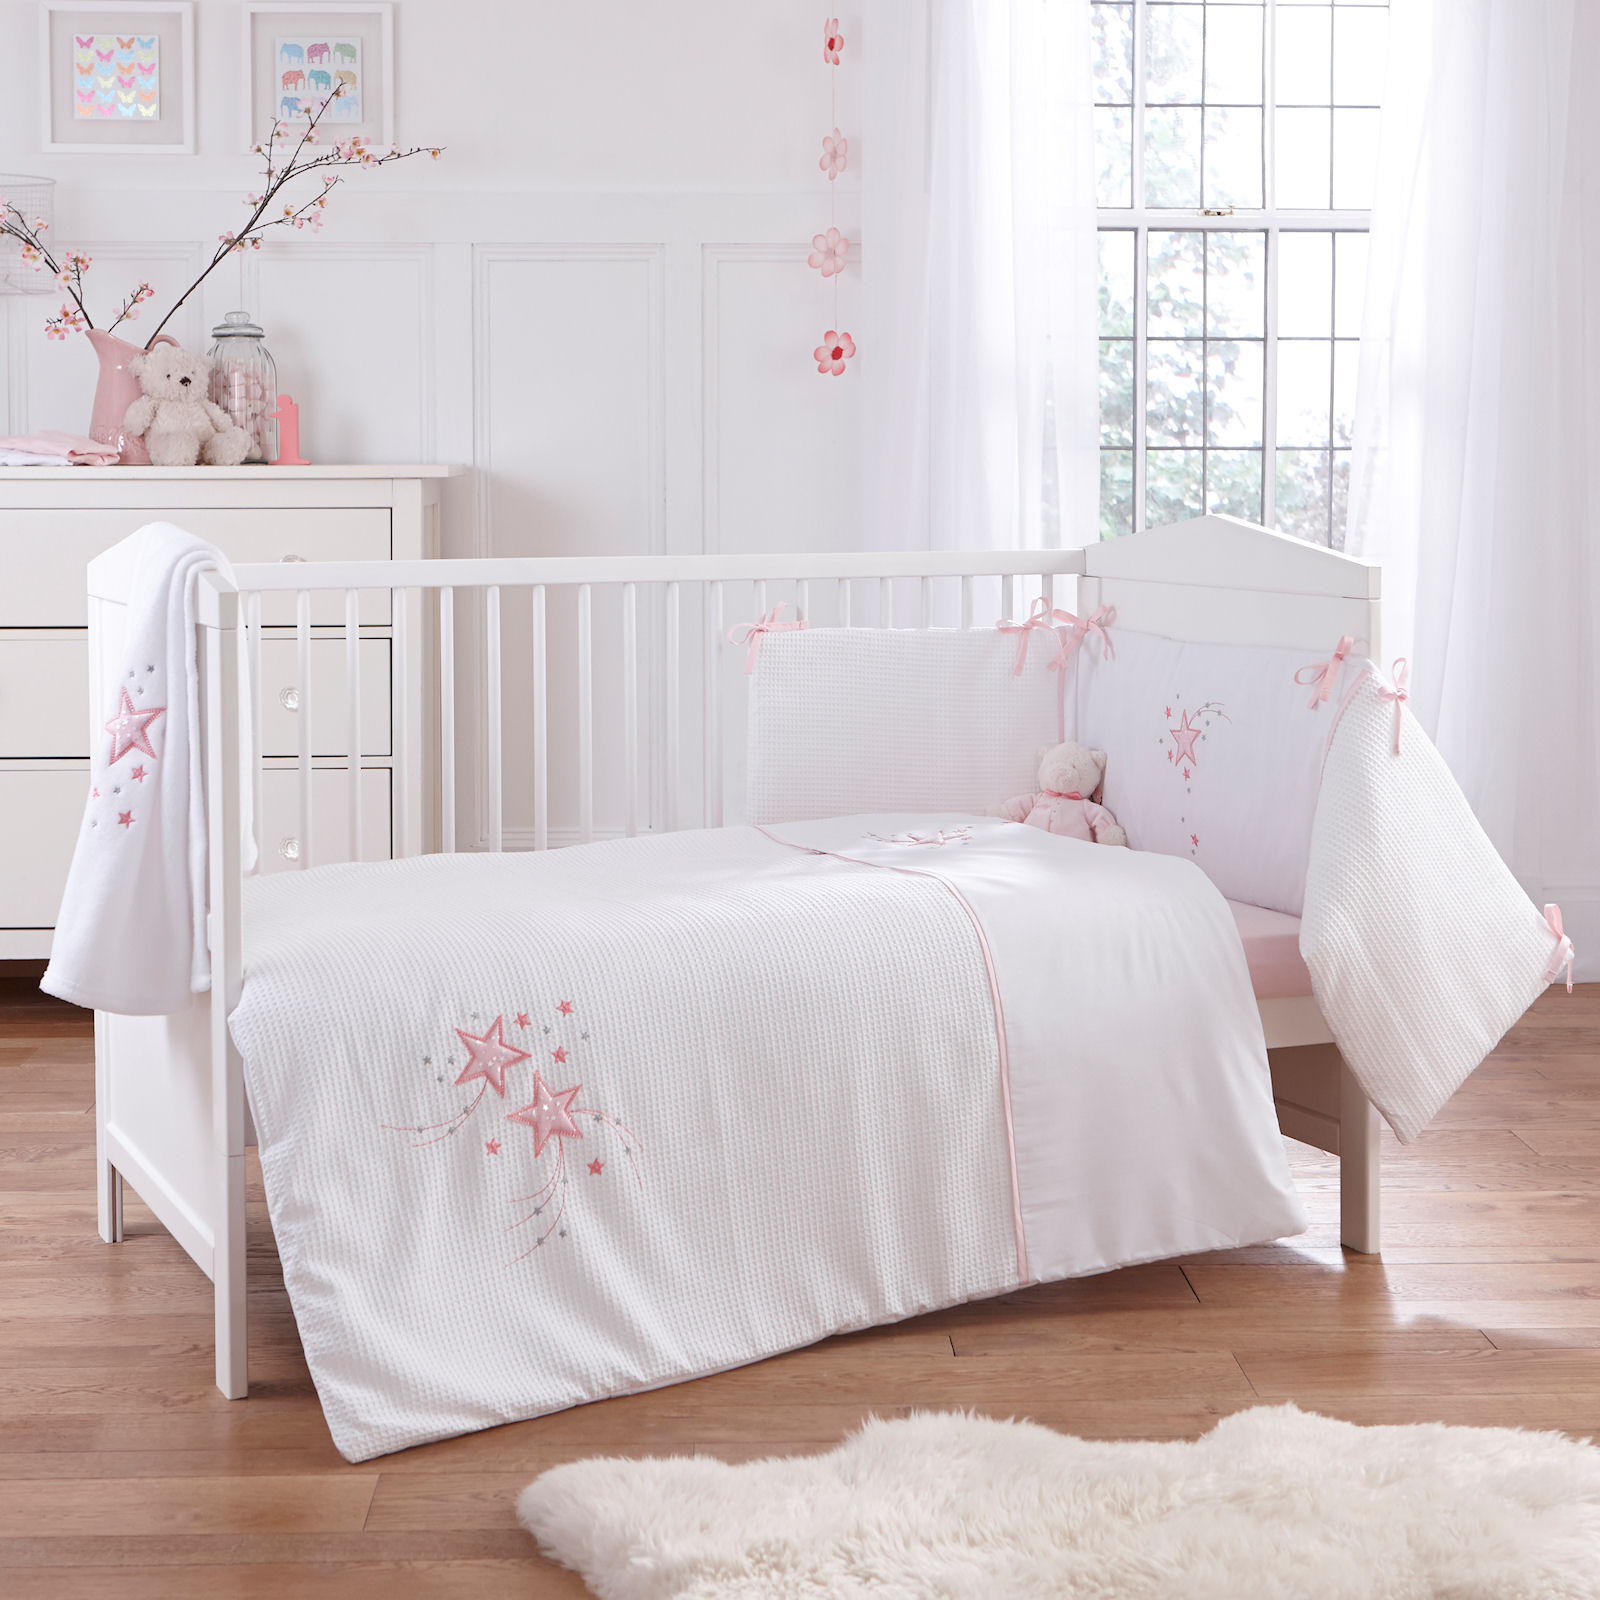 Clair De Lune Stardust 3 Piece Cot Cot Bed Bedding Bale Pink